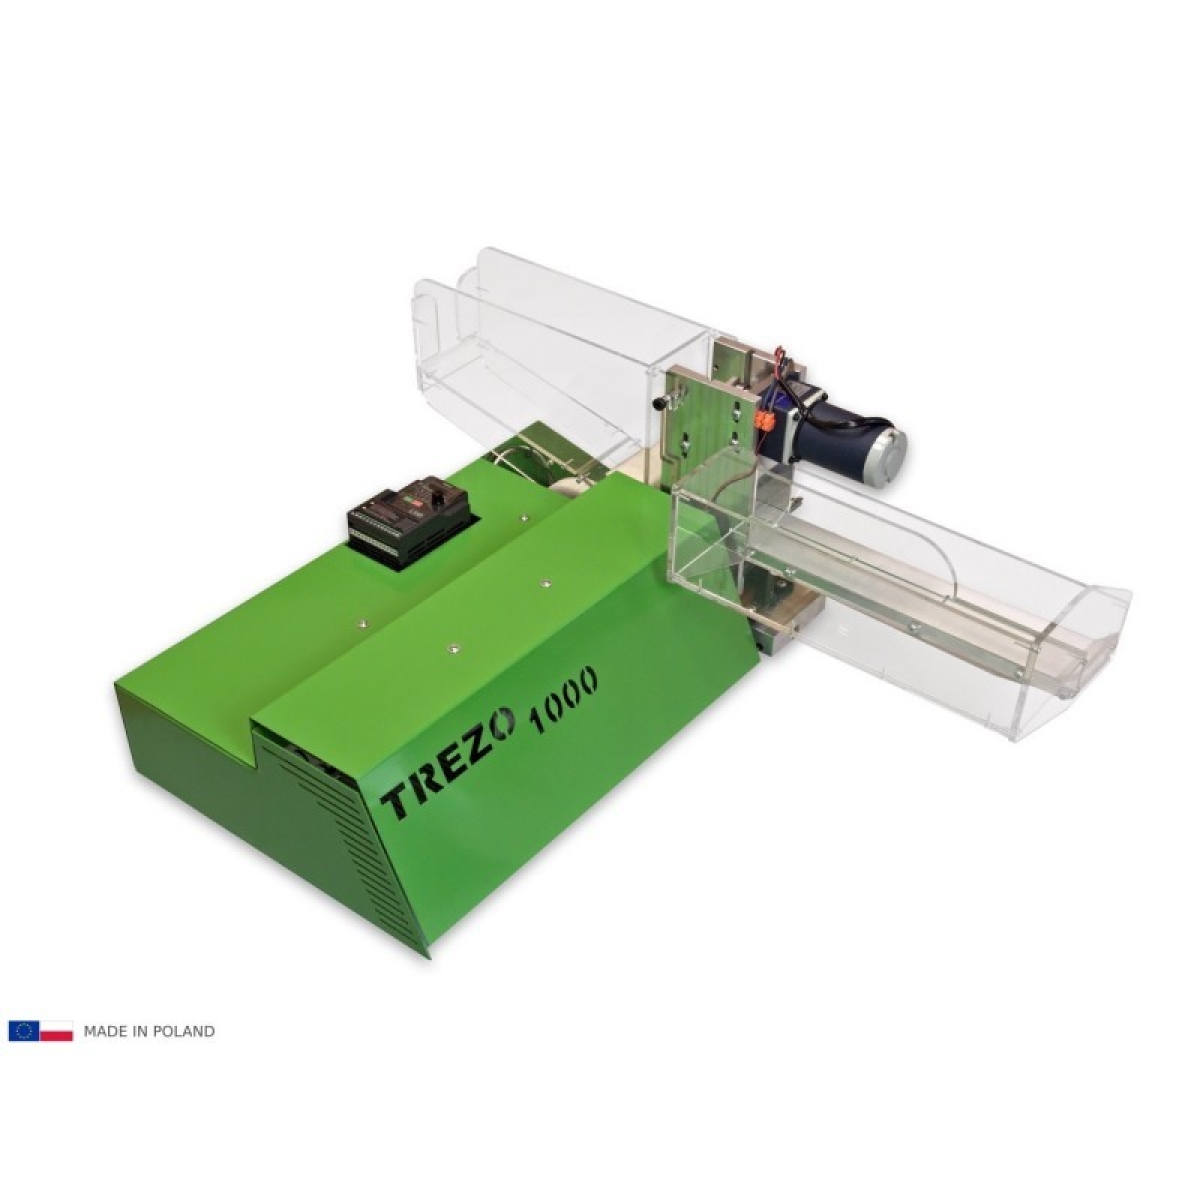 Electric cigarette injector-machine TREZO 1000 GREEN